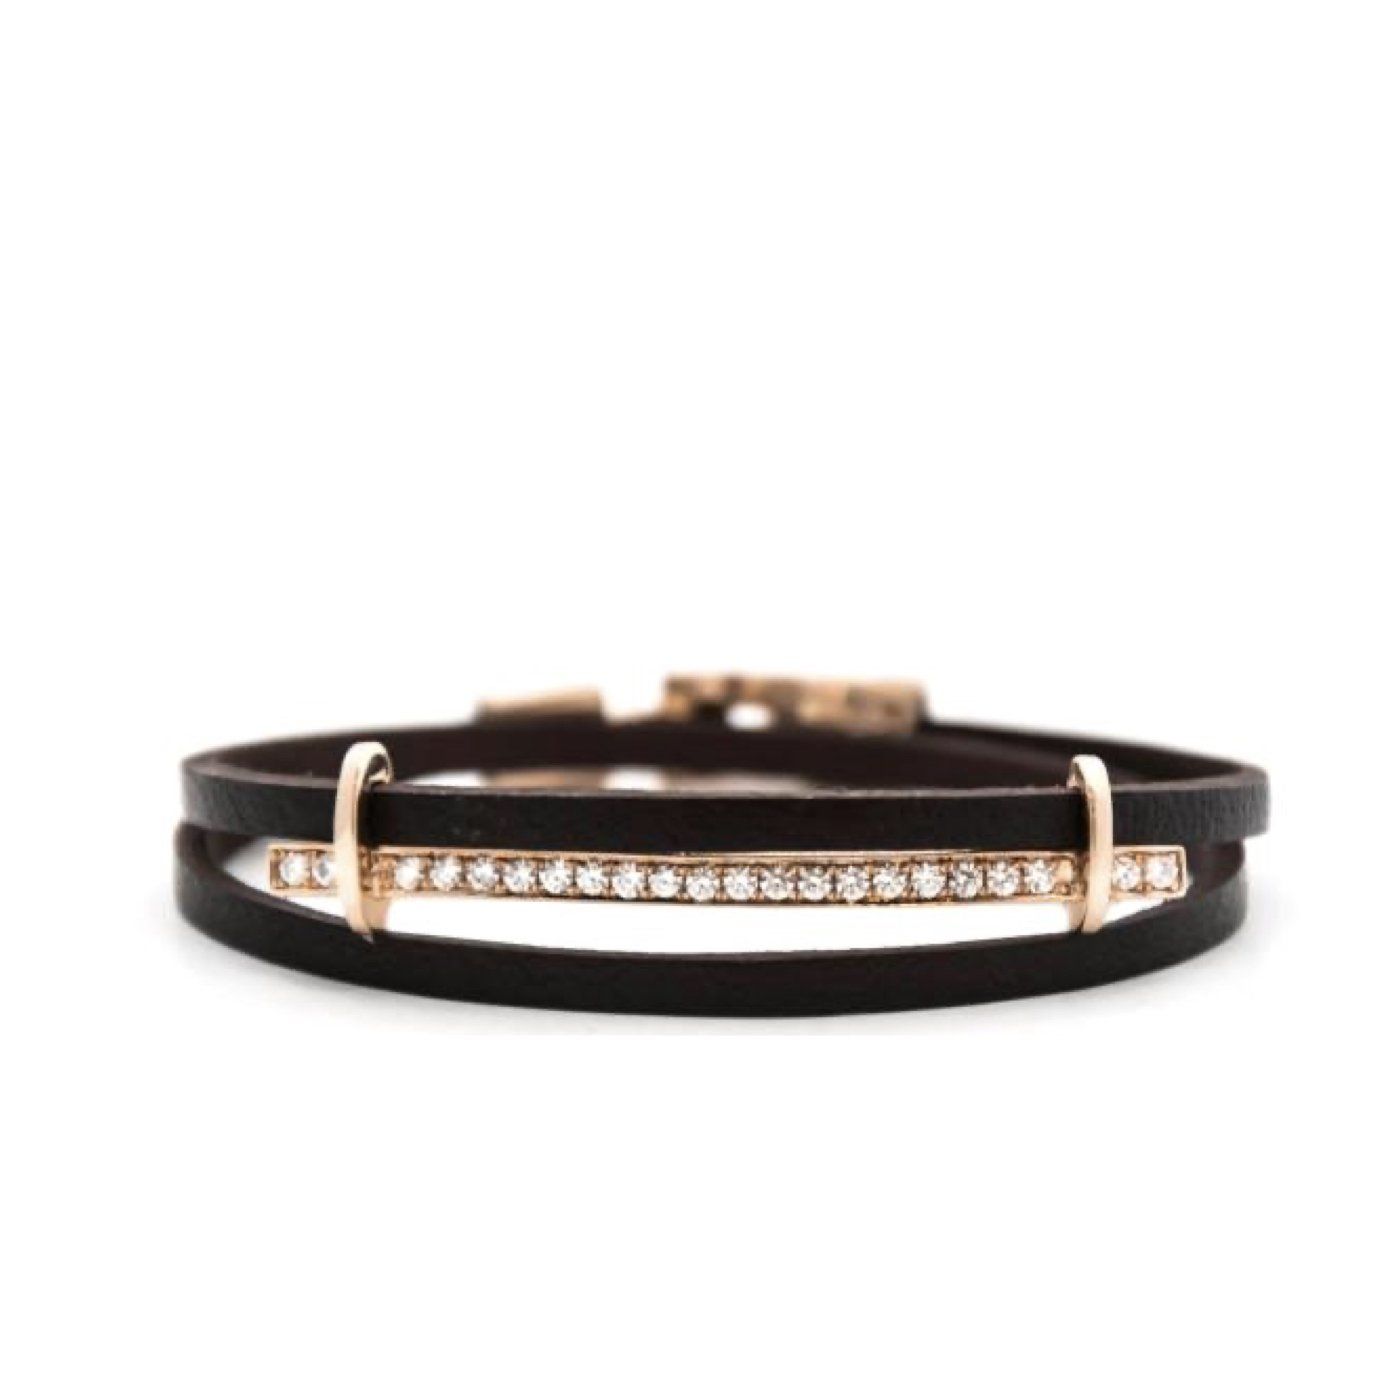 San remo leather bracelet rose gold & diamonds Bracelets Zadeh NY 